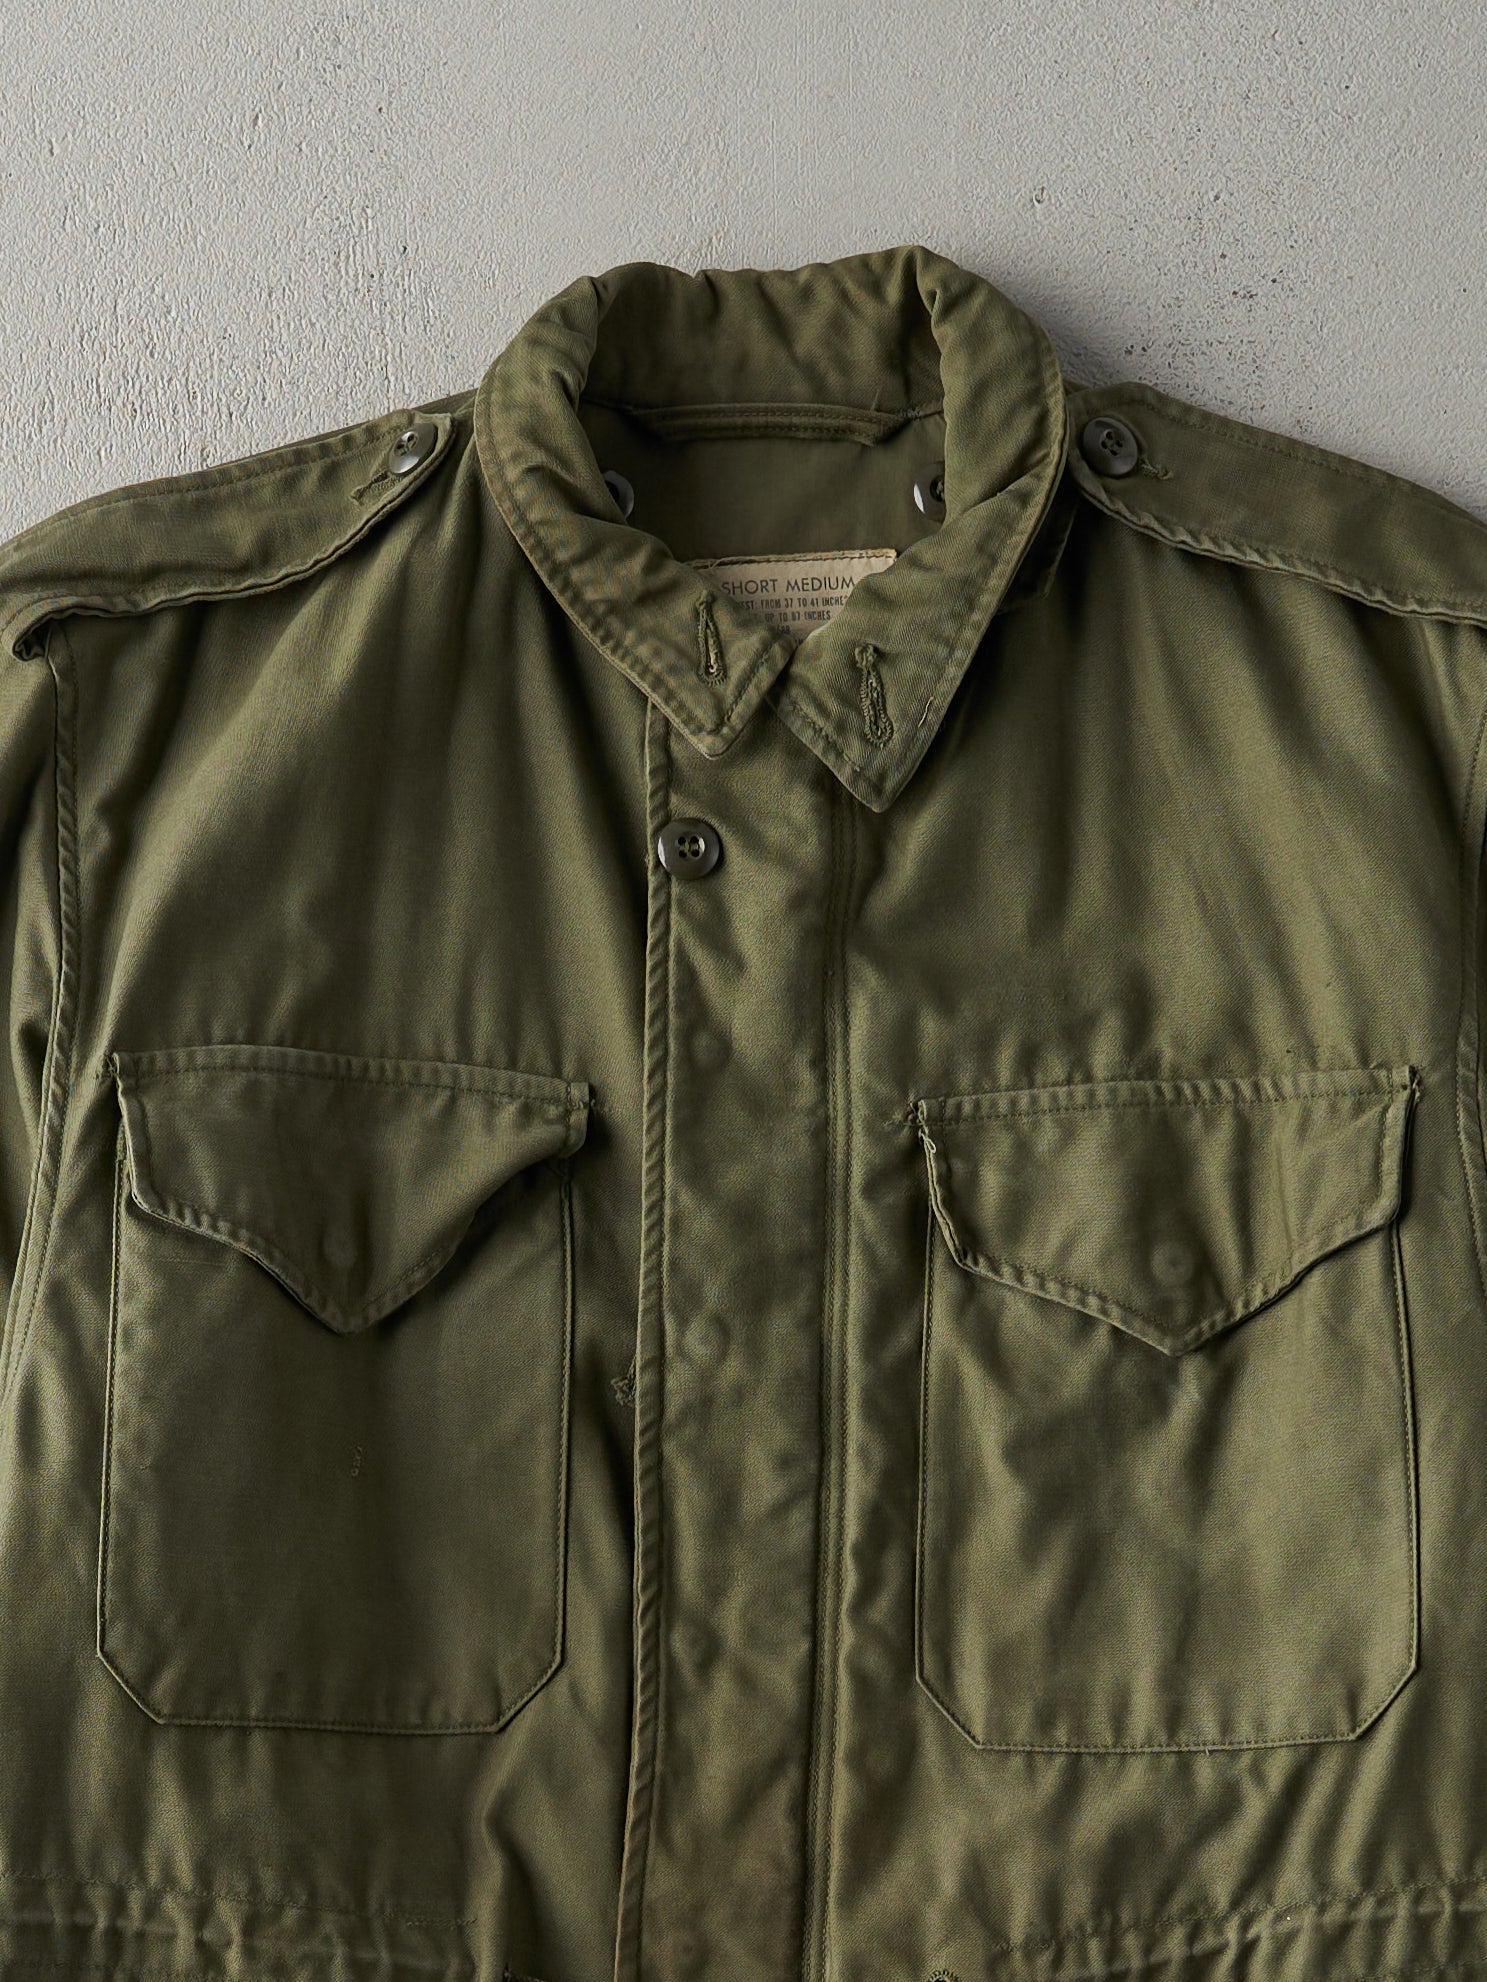 Vintage 60s Olive Green OG 107 Field Coat Military Jacket (M)